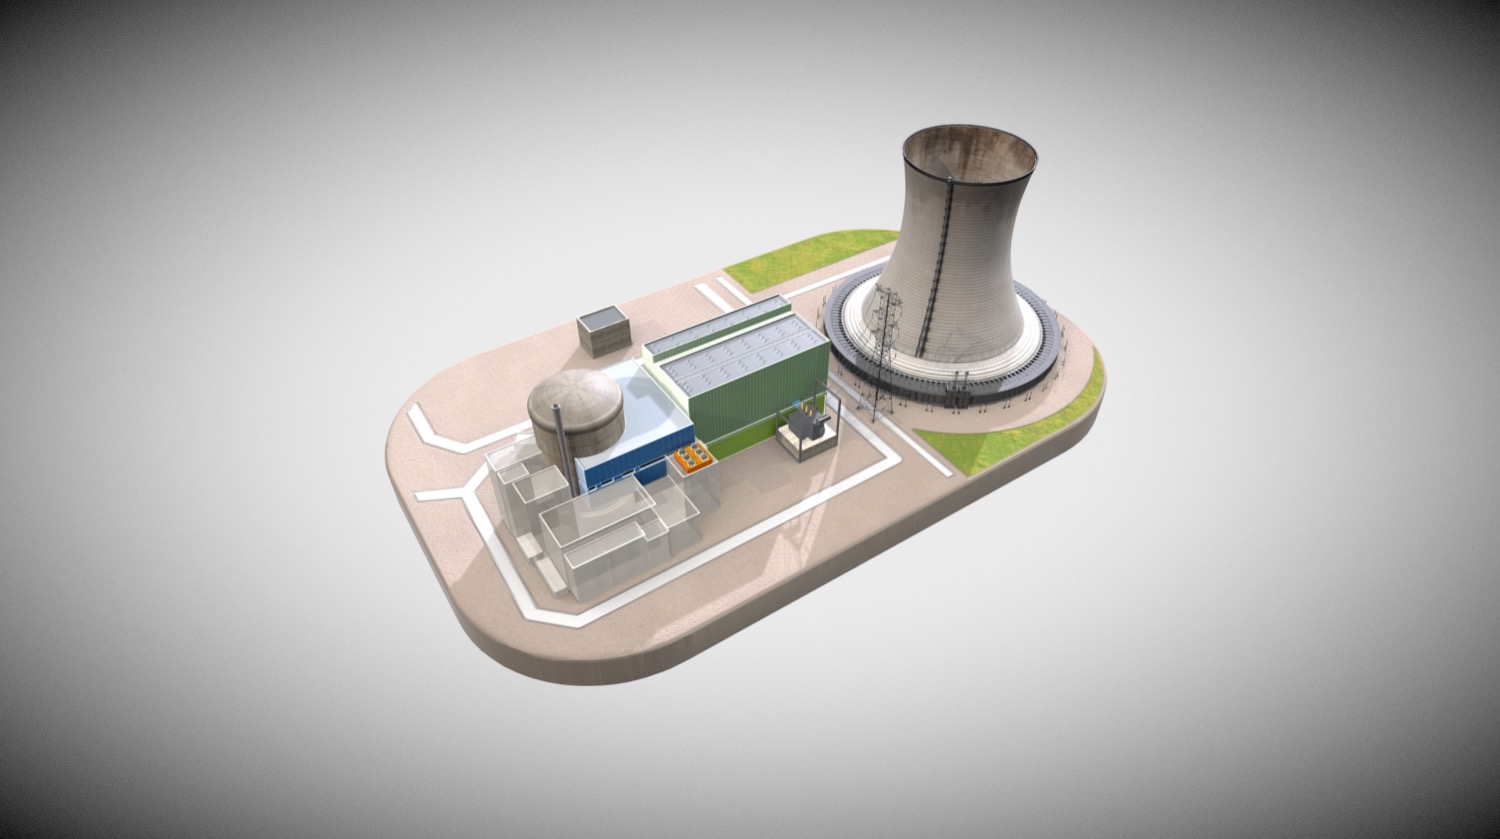 Centrale nucléaire de Cattenom 3D: essai de visualisation didactique

Cattenom 3D nuclear power plant: didactic visualization test - Cattenom 3D nuclear power plant - 3D model by msaemann 3d model